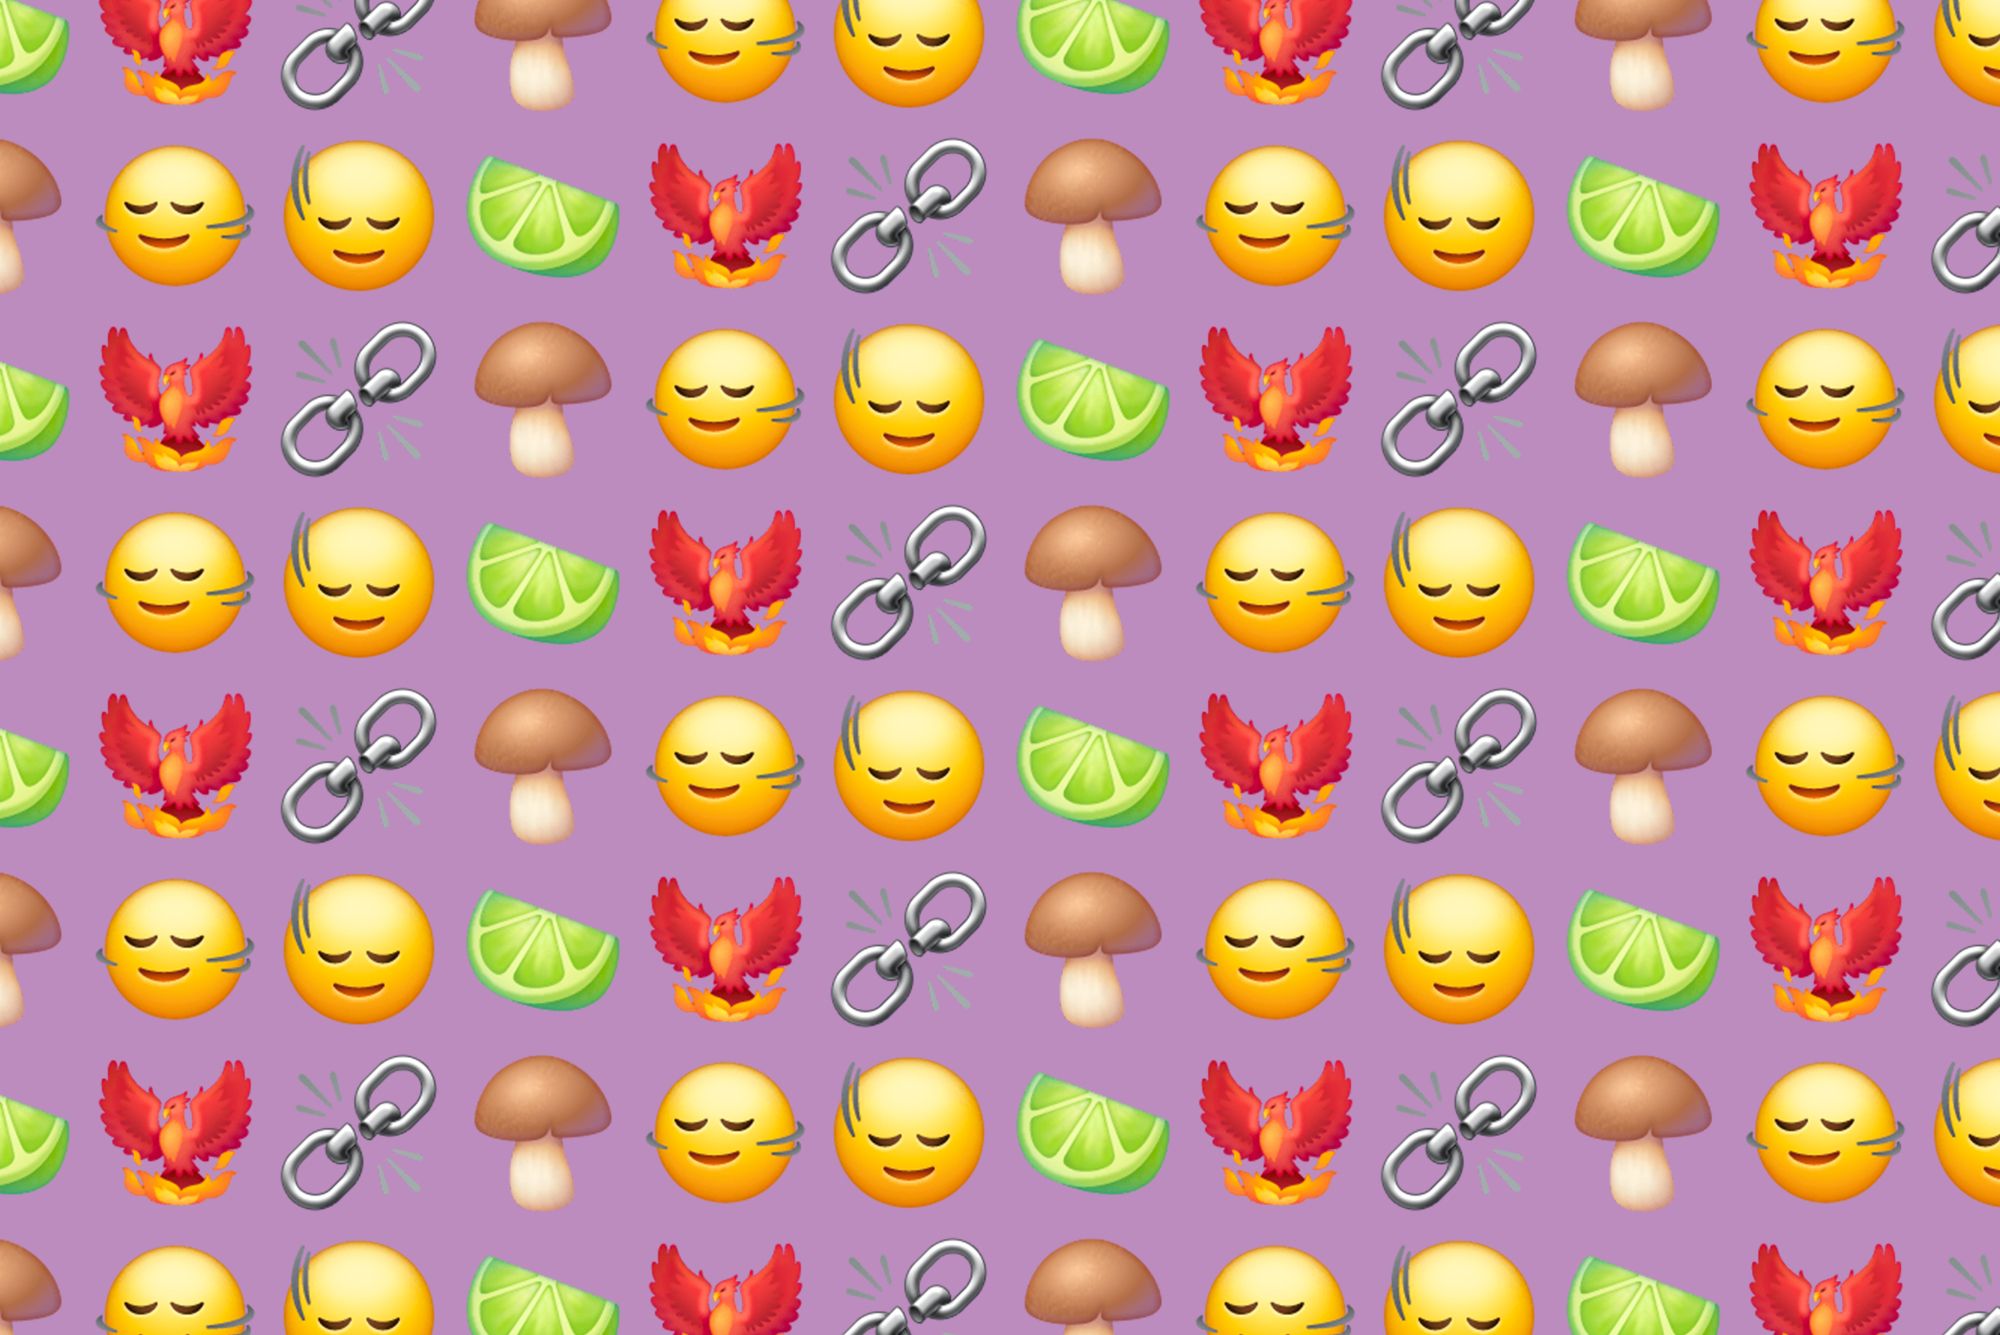 Samsung One UI 6.0 Emoji Changelog